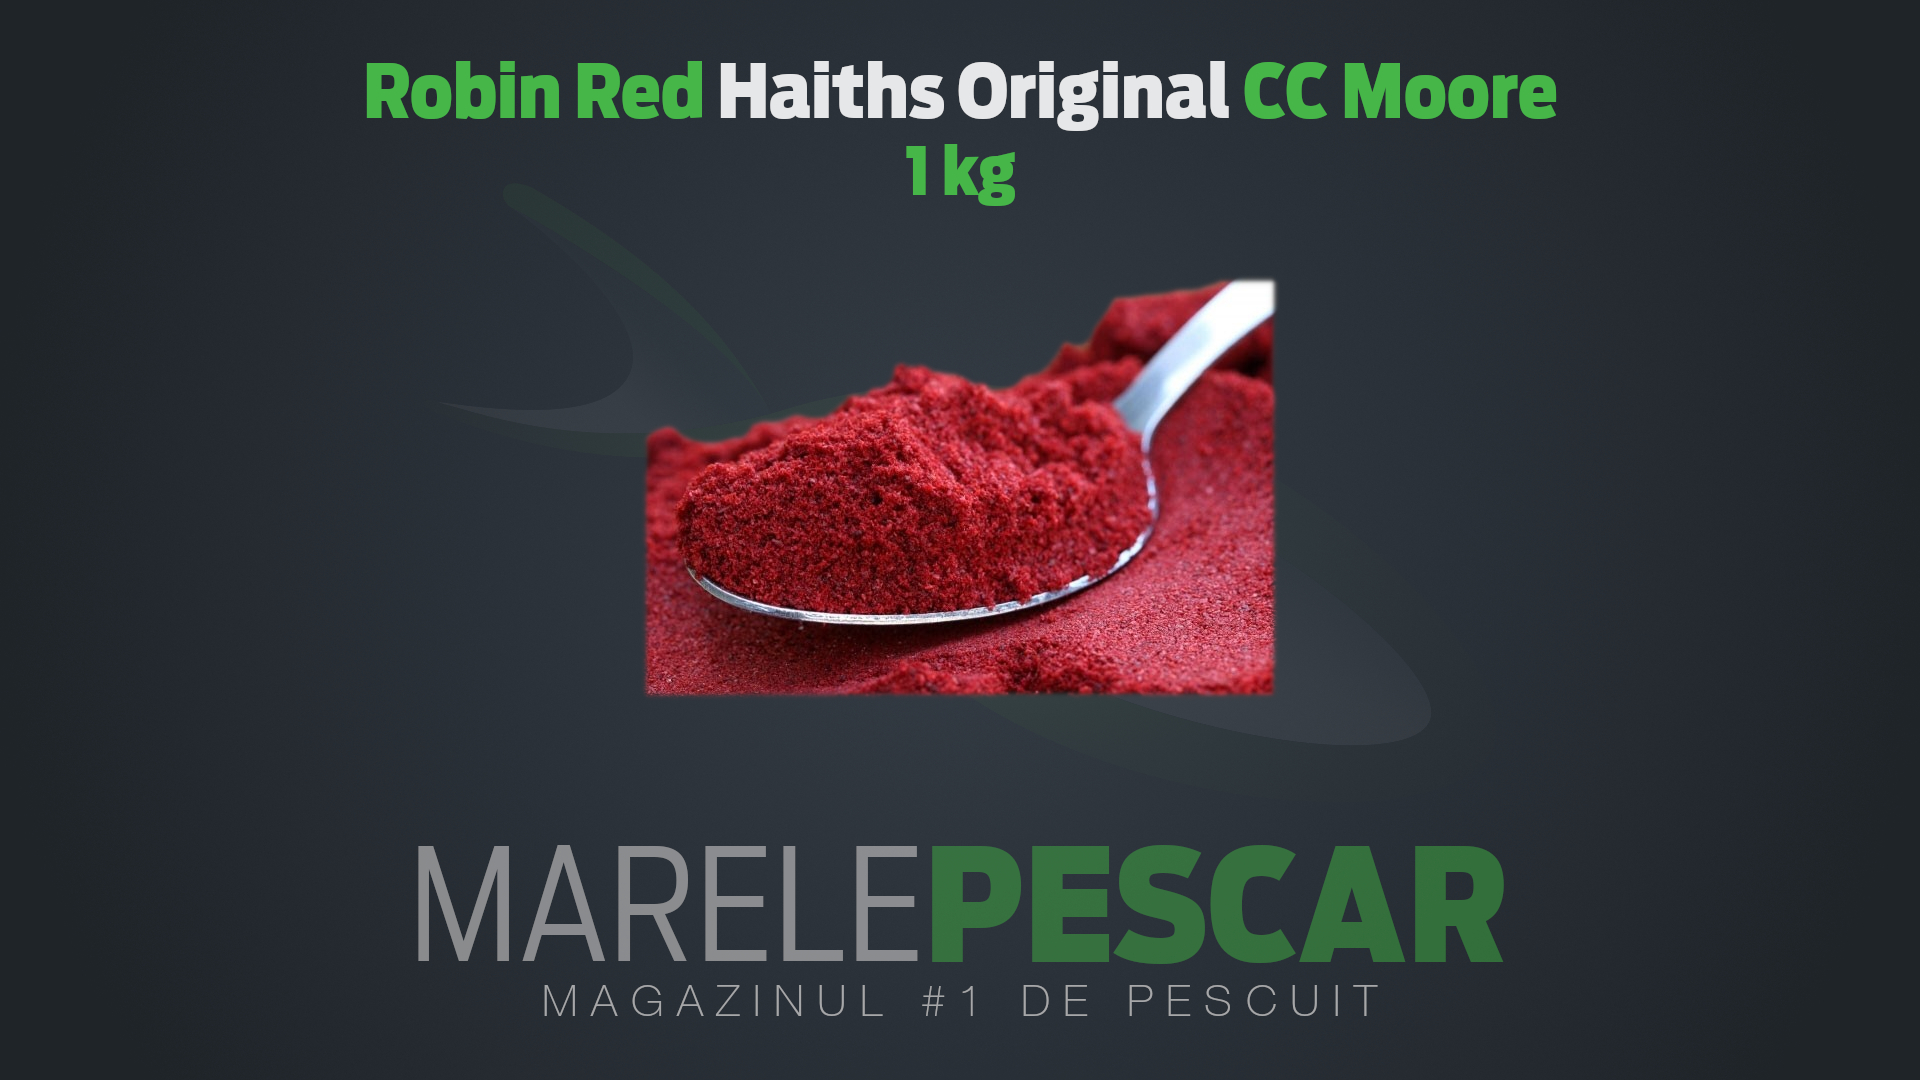 Robin Red Haiths Original CC Moore